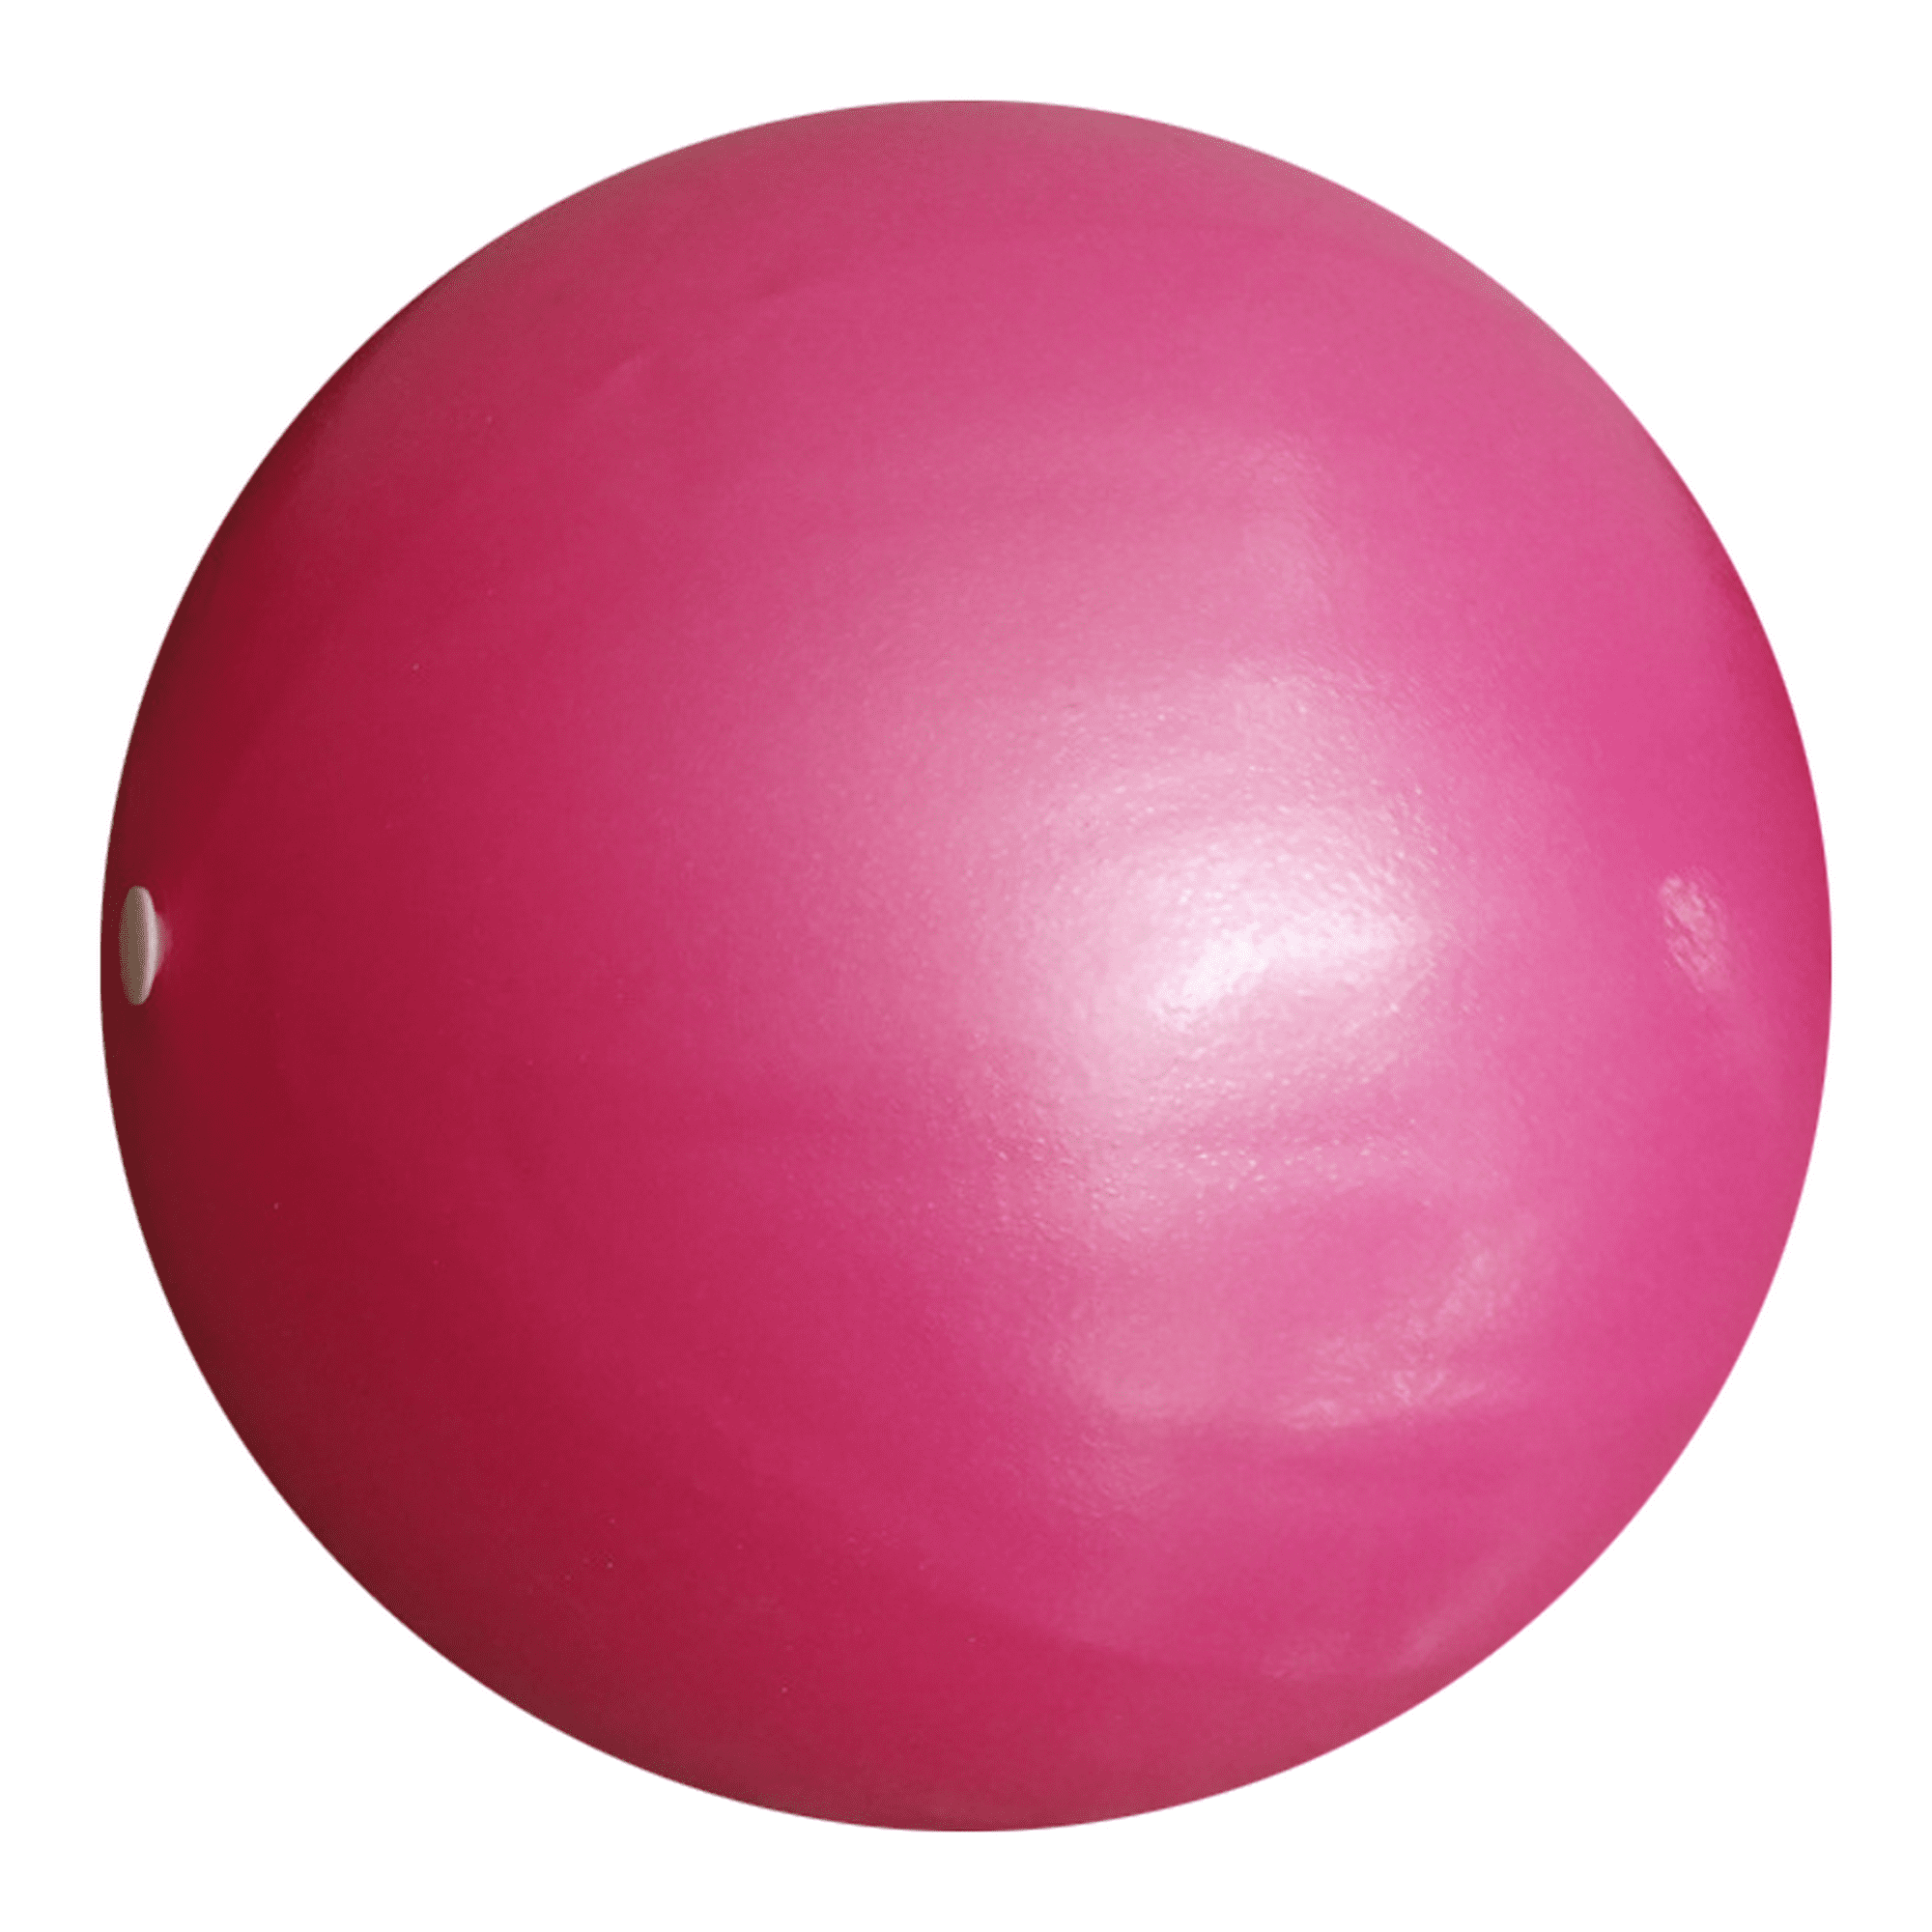 Mini pelota de yoga para ejercicios de Pilates: ejercicio, equilibrio  físico, mejora la estabilidad, entrenamiento básico Adepaton Yoga y Pilates